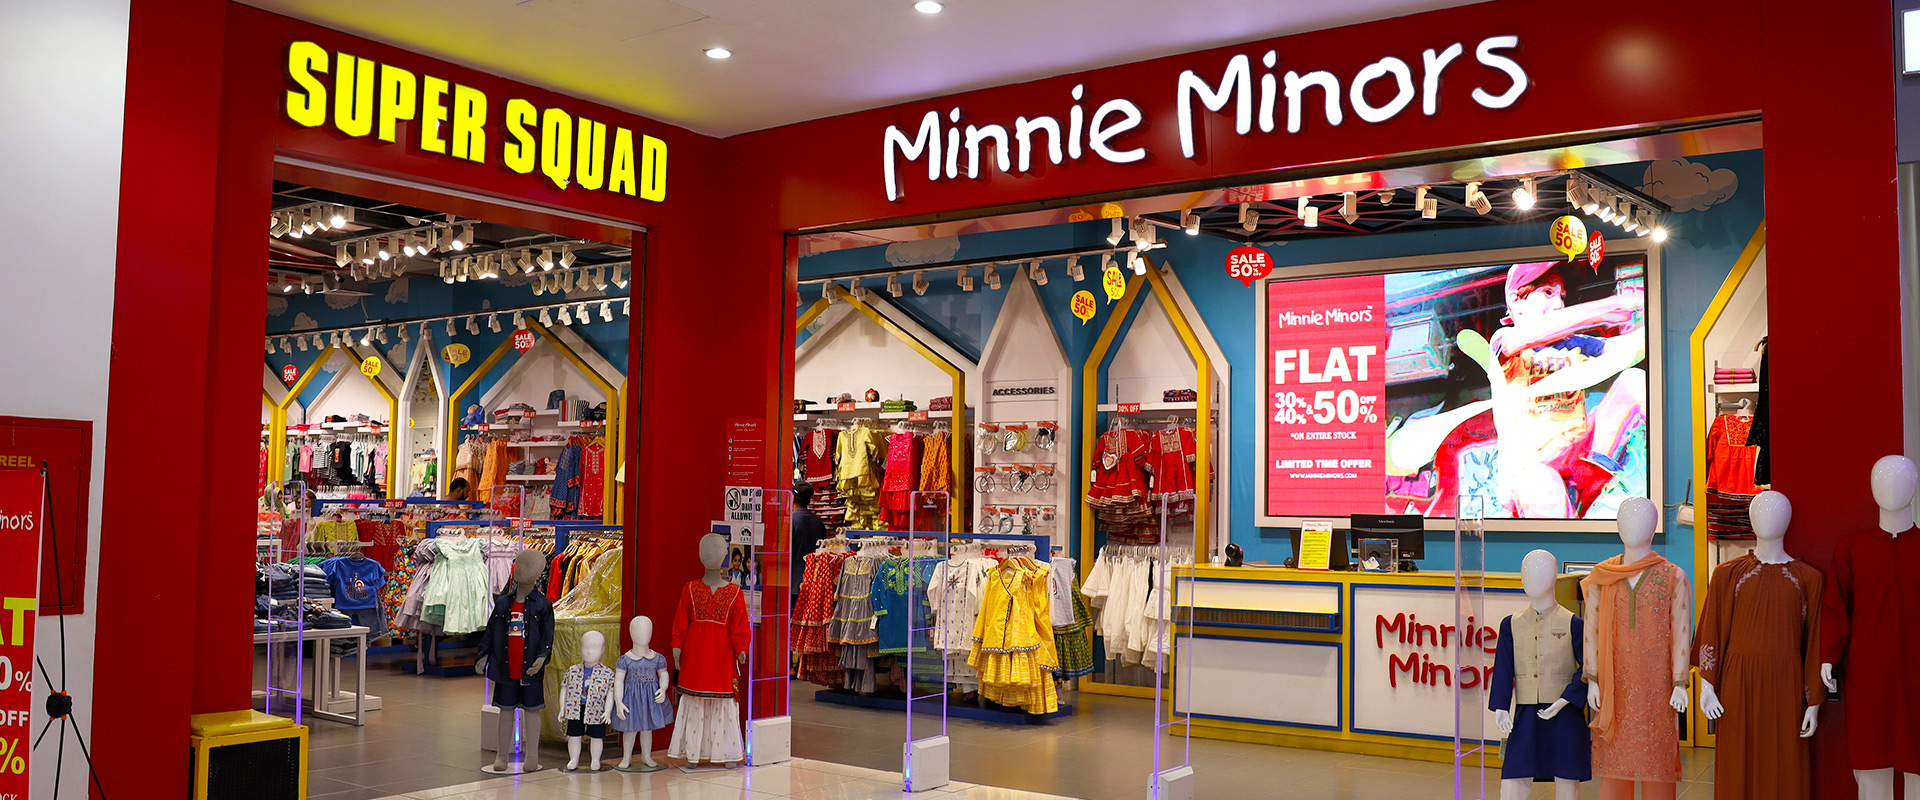 minnie-minors-1